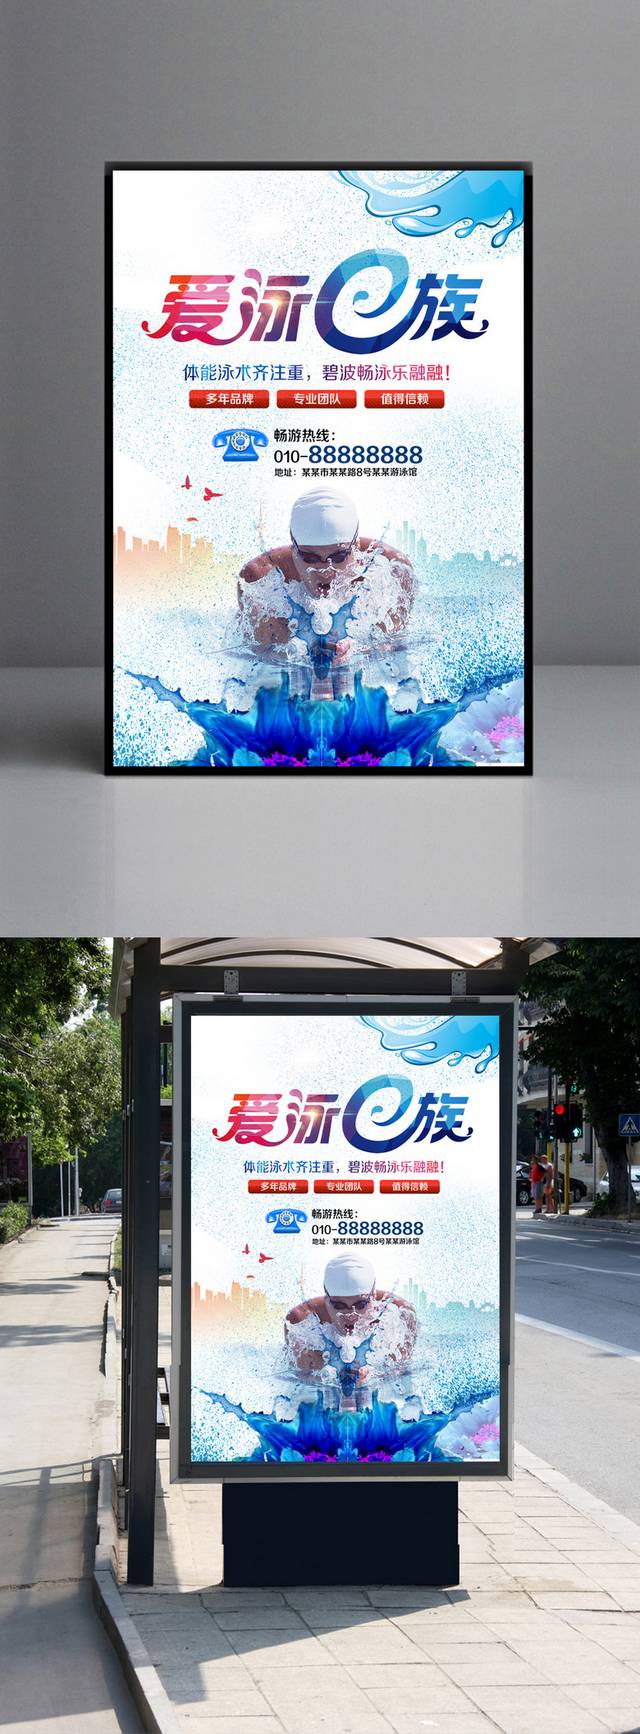 游泳健身宣传海报设计